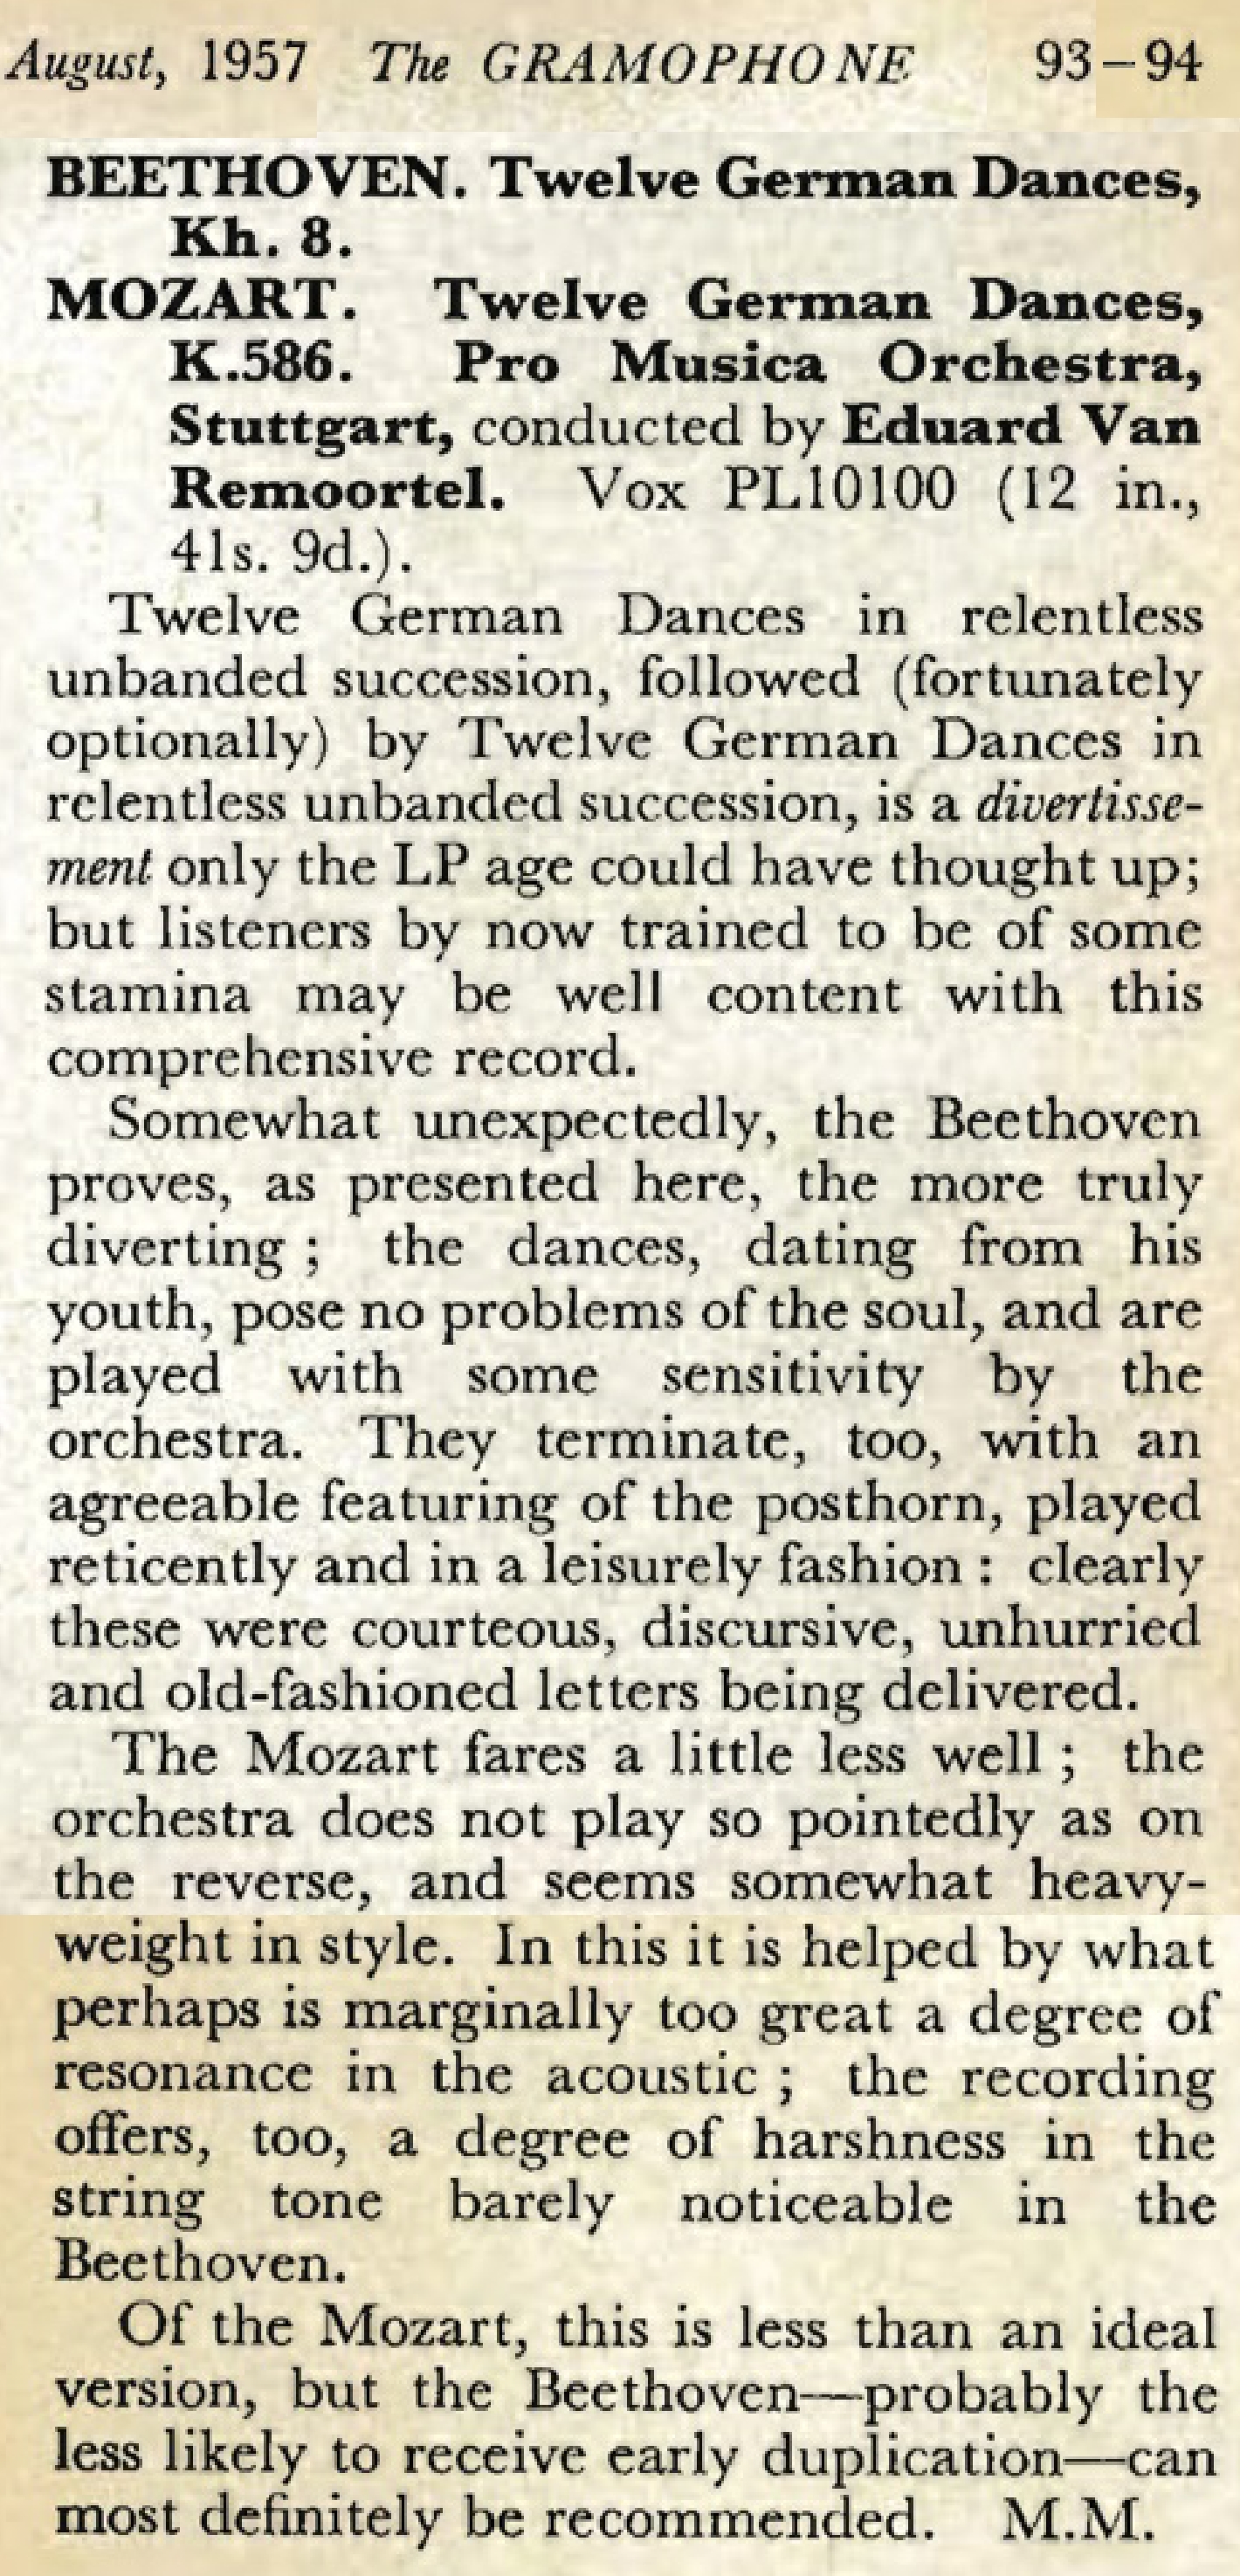 Présentation du disque VOX PL 10100, Extrait de la revue «The Gramophone» d'août 1957 en pages 93-94, cliquer pour une vue agrandie